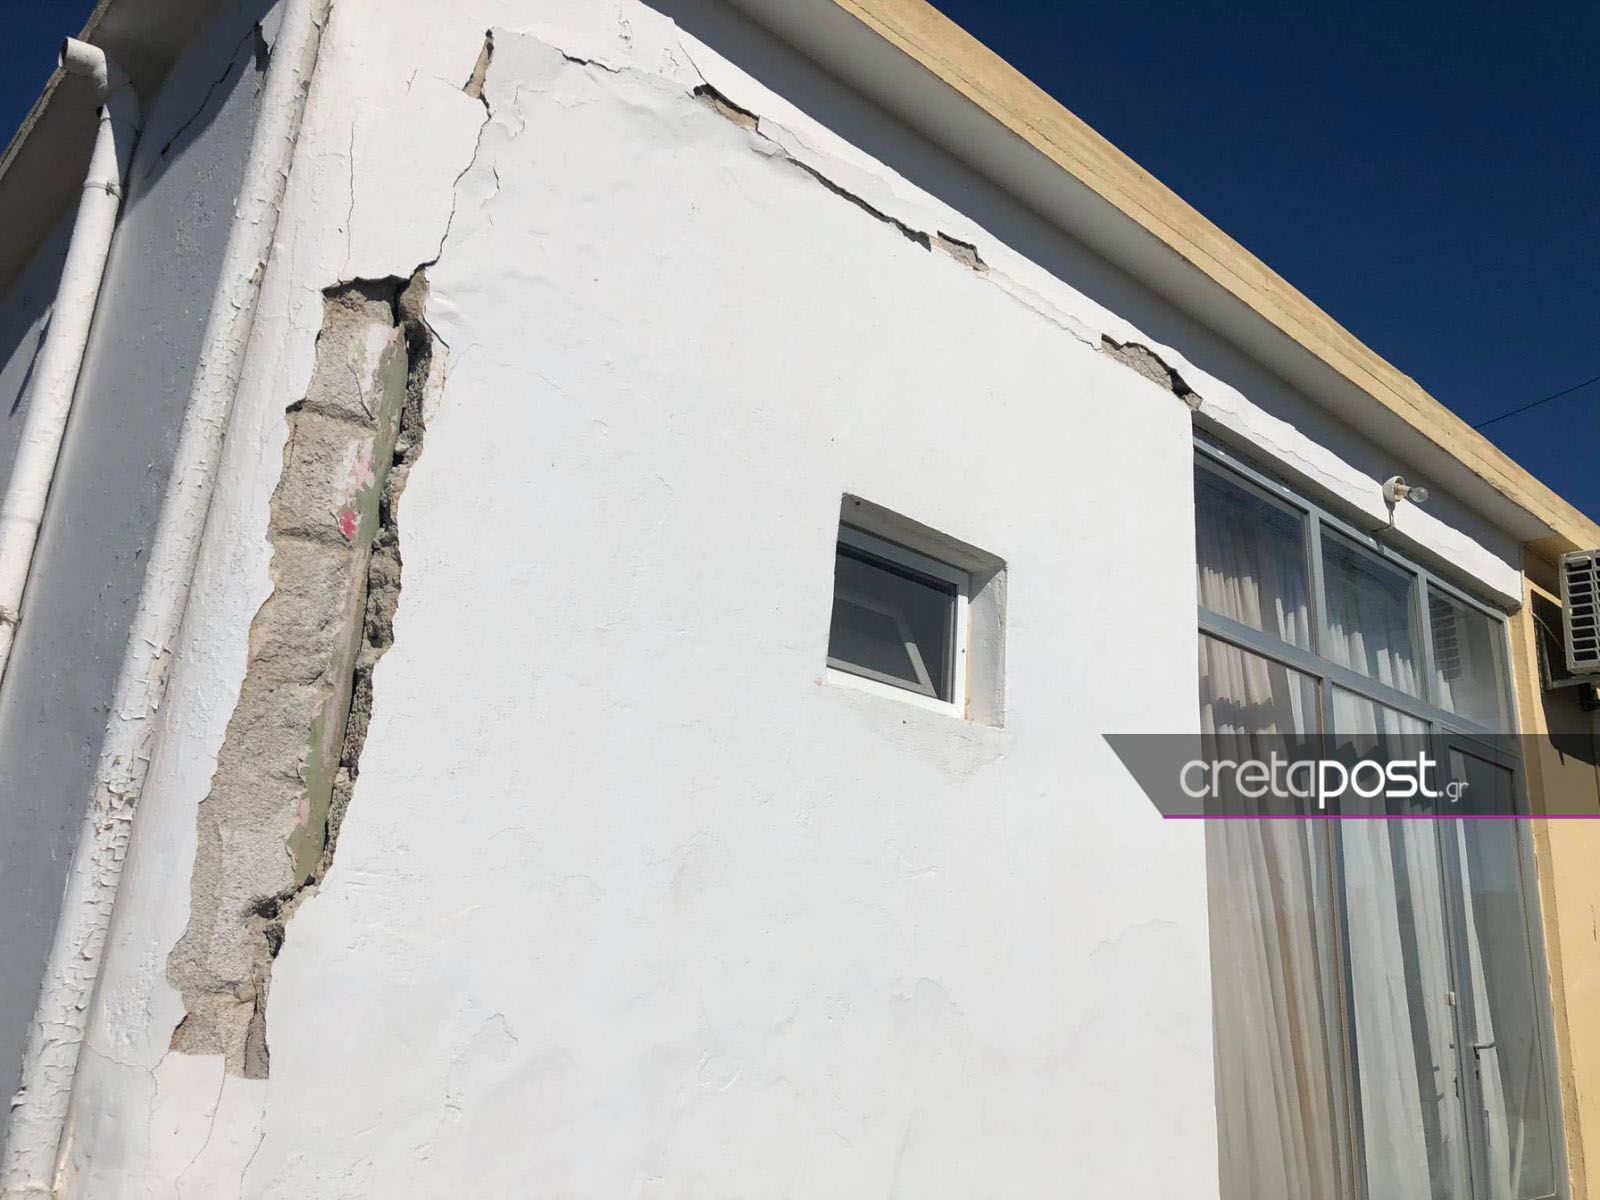 Σεισμός στην Κρήτη: Δεν έμεινε τίποτα από το χωριό – Ούρλιαζαν και έκλαιγαν οι κάτοικοι